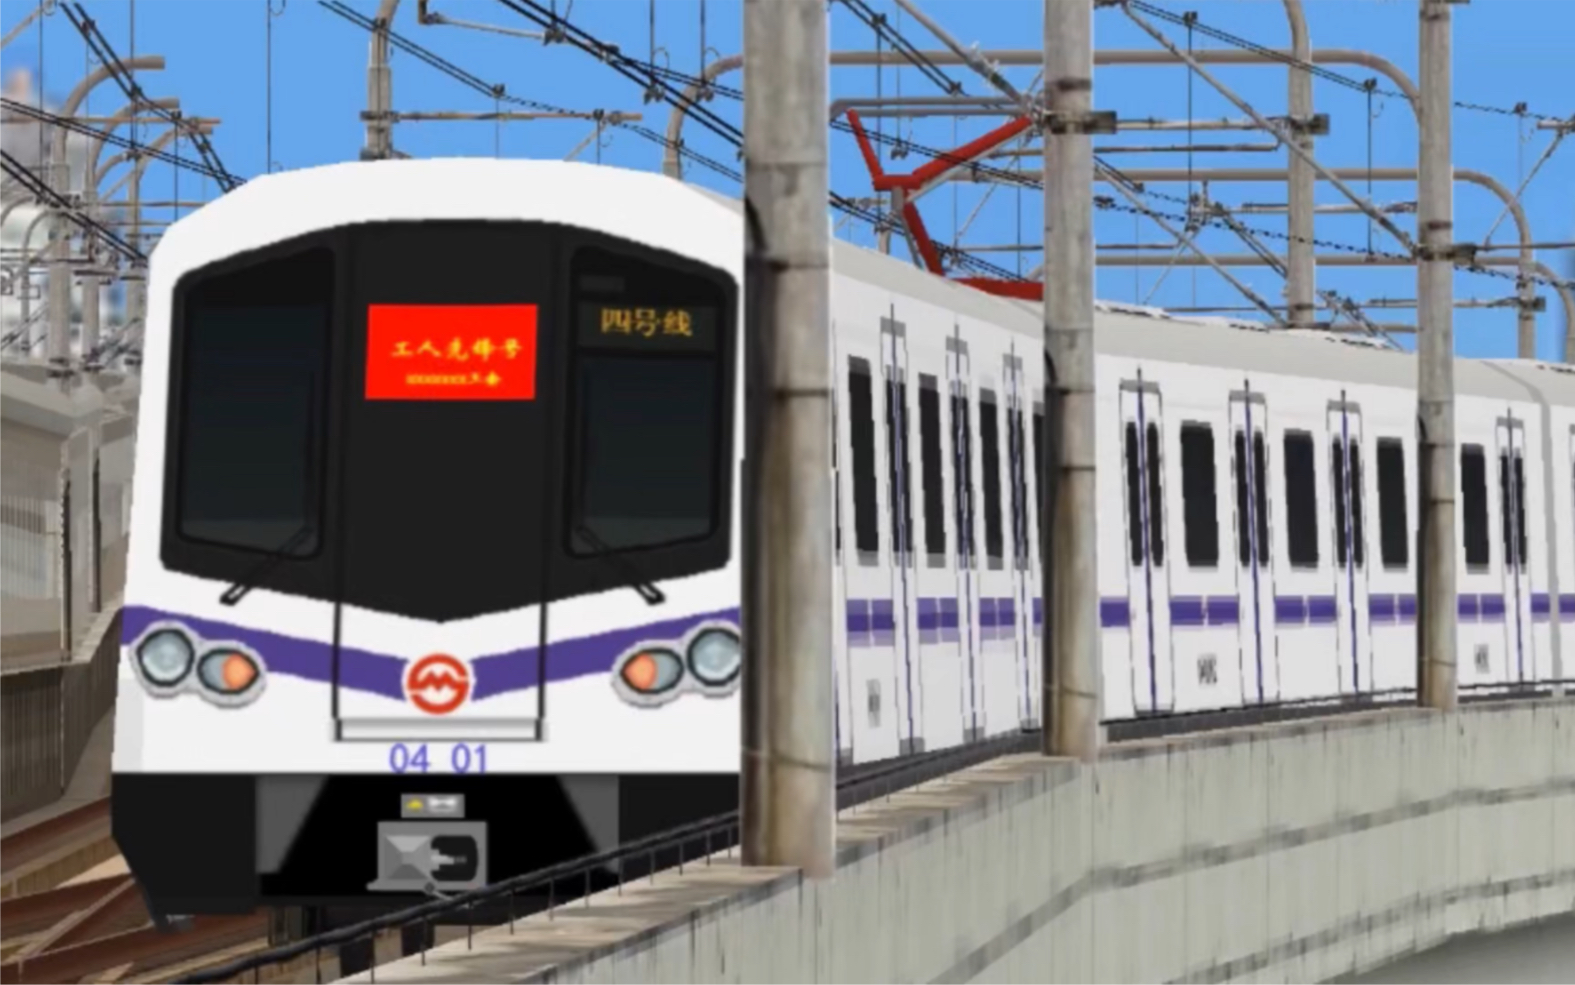 如何沉浸式体验上海地铁4号线04a010401车出宝山路站